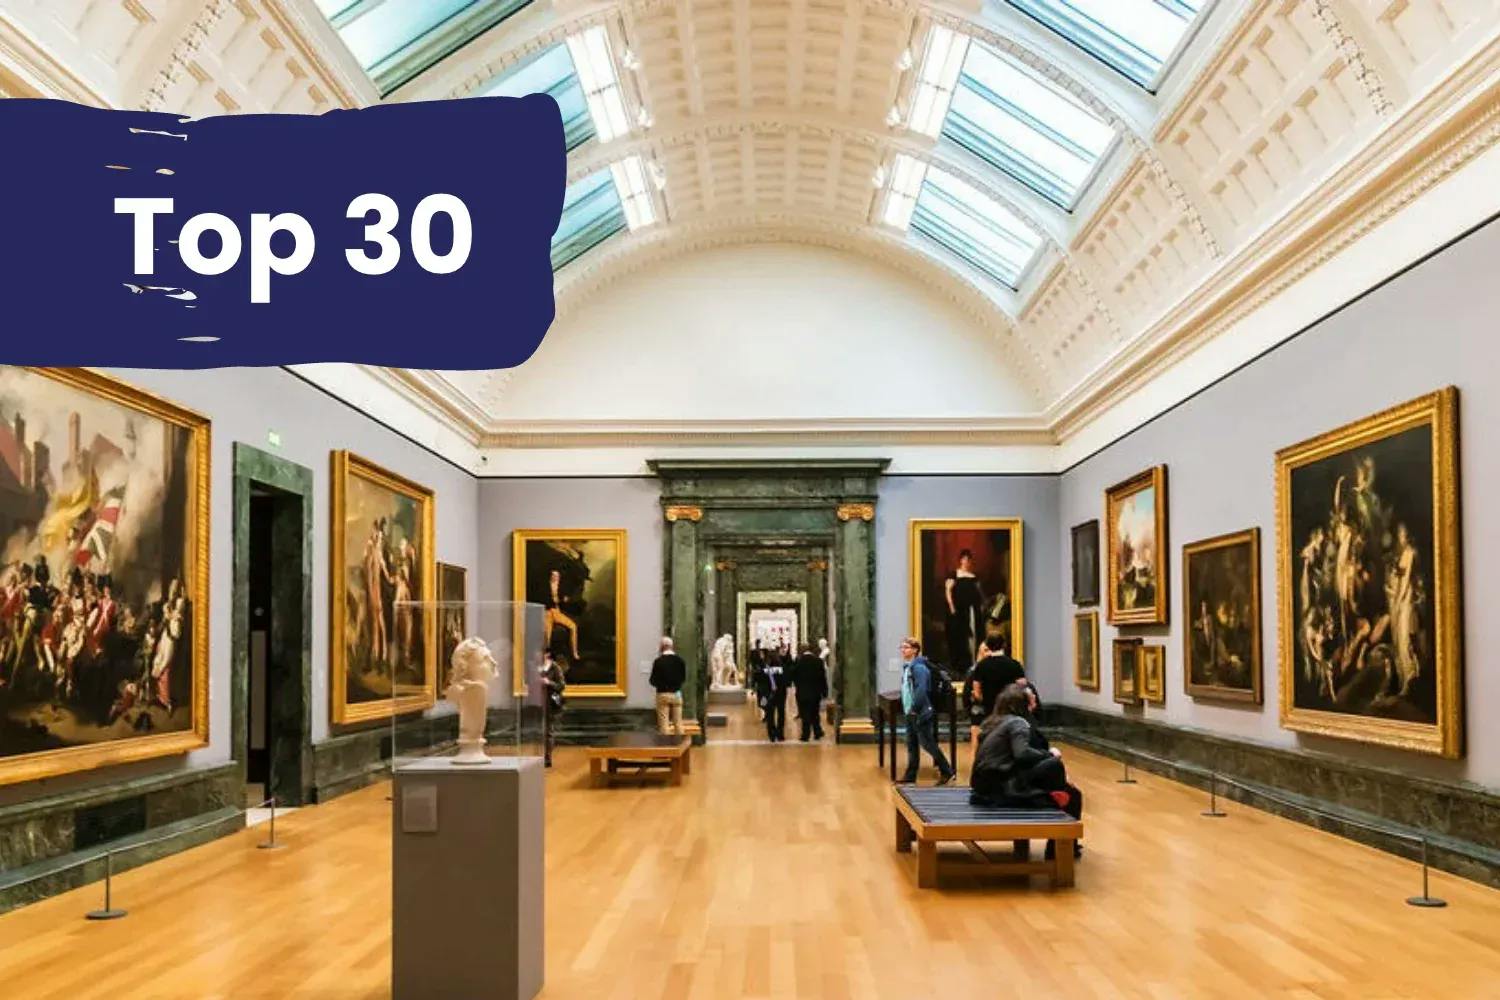 Top 30 attractions - museum